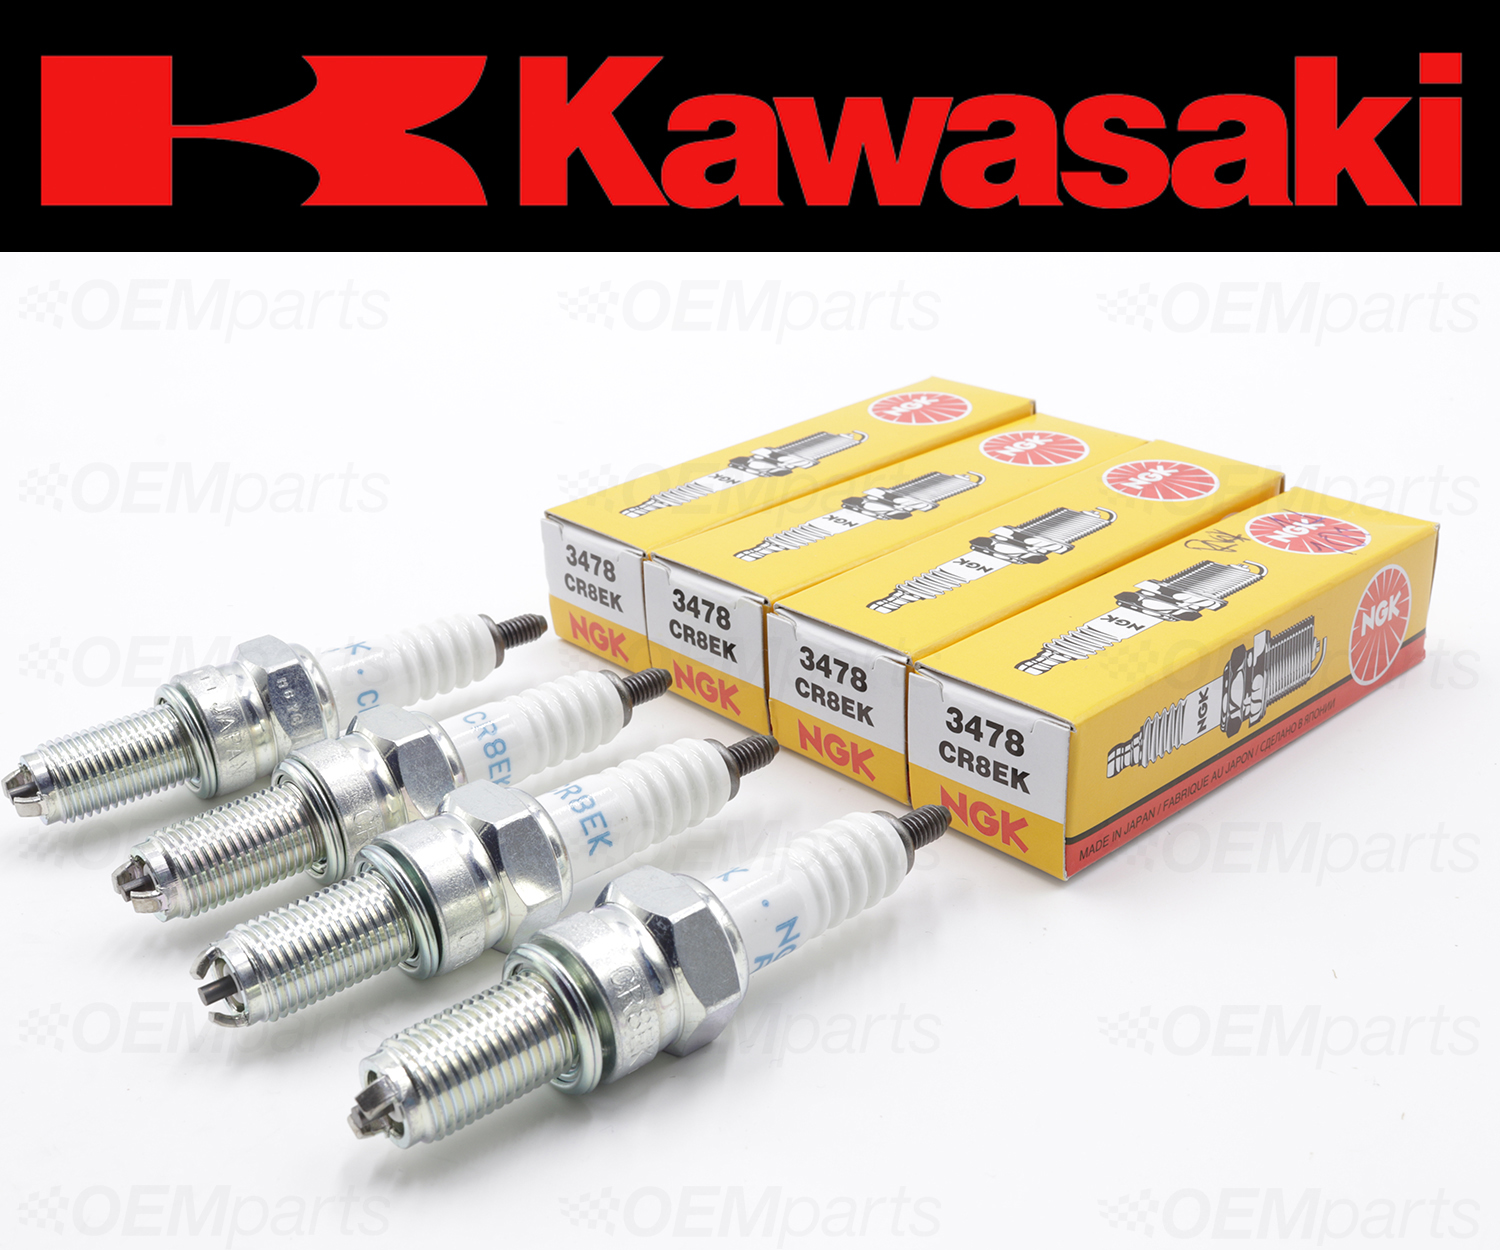 Kawasaki Spark Plug Chart